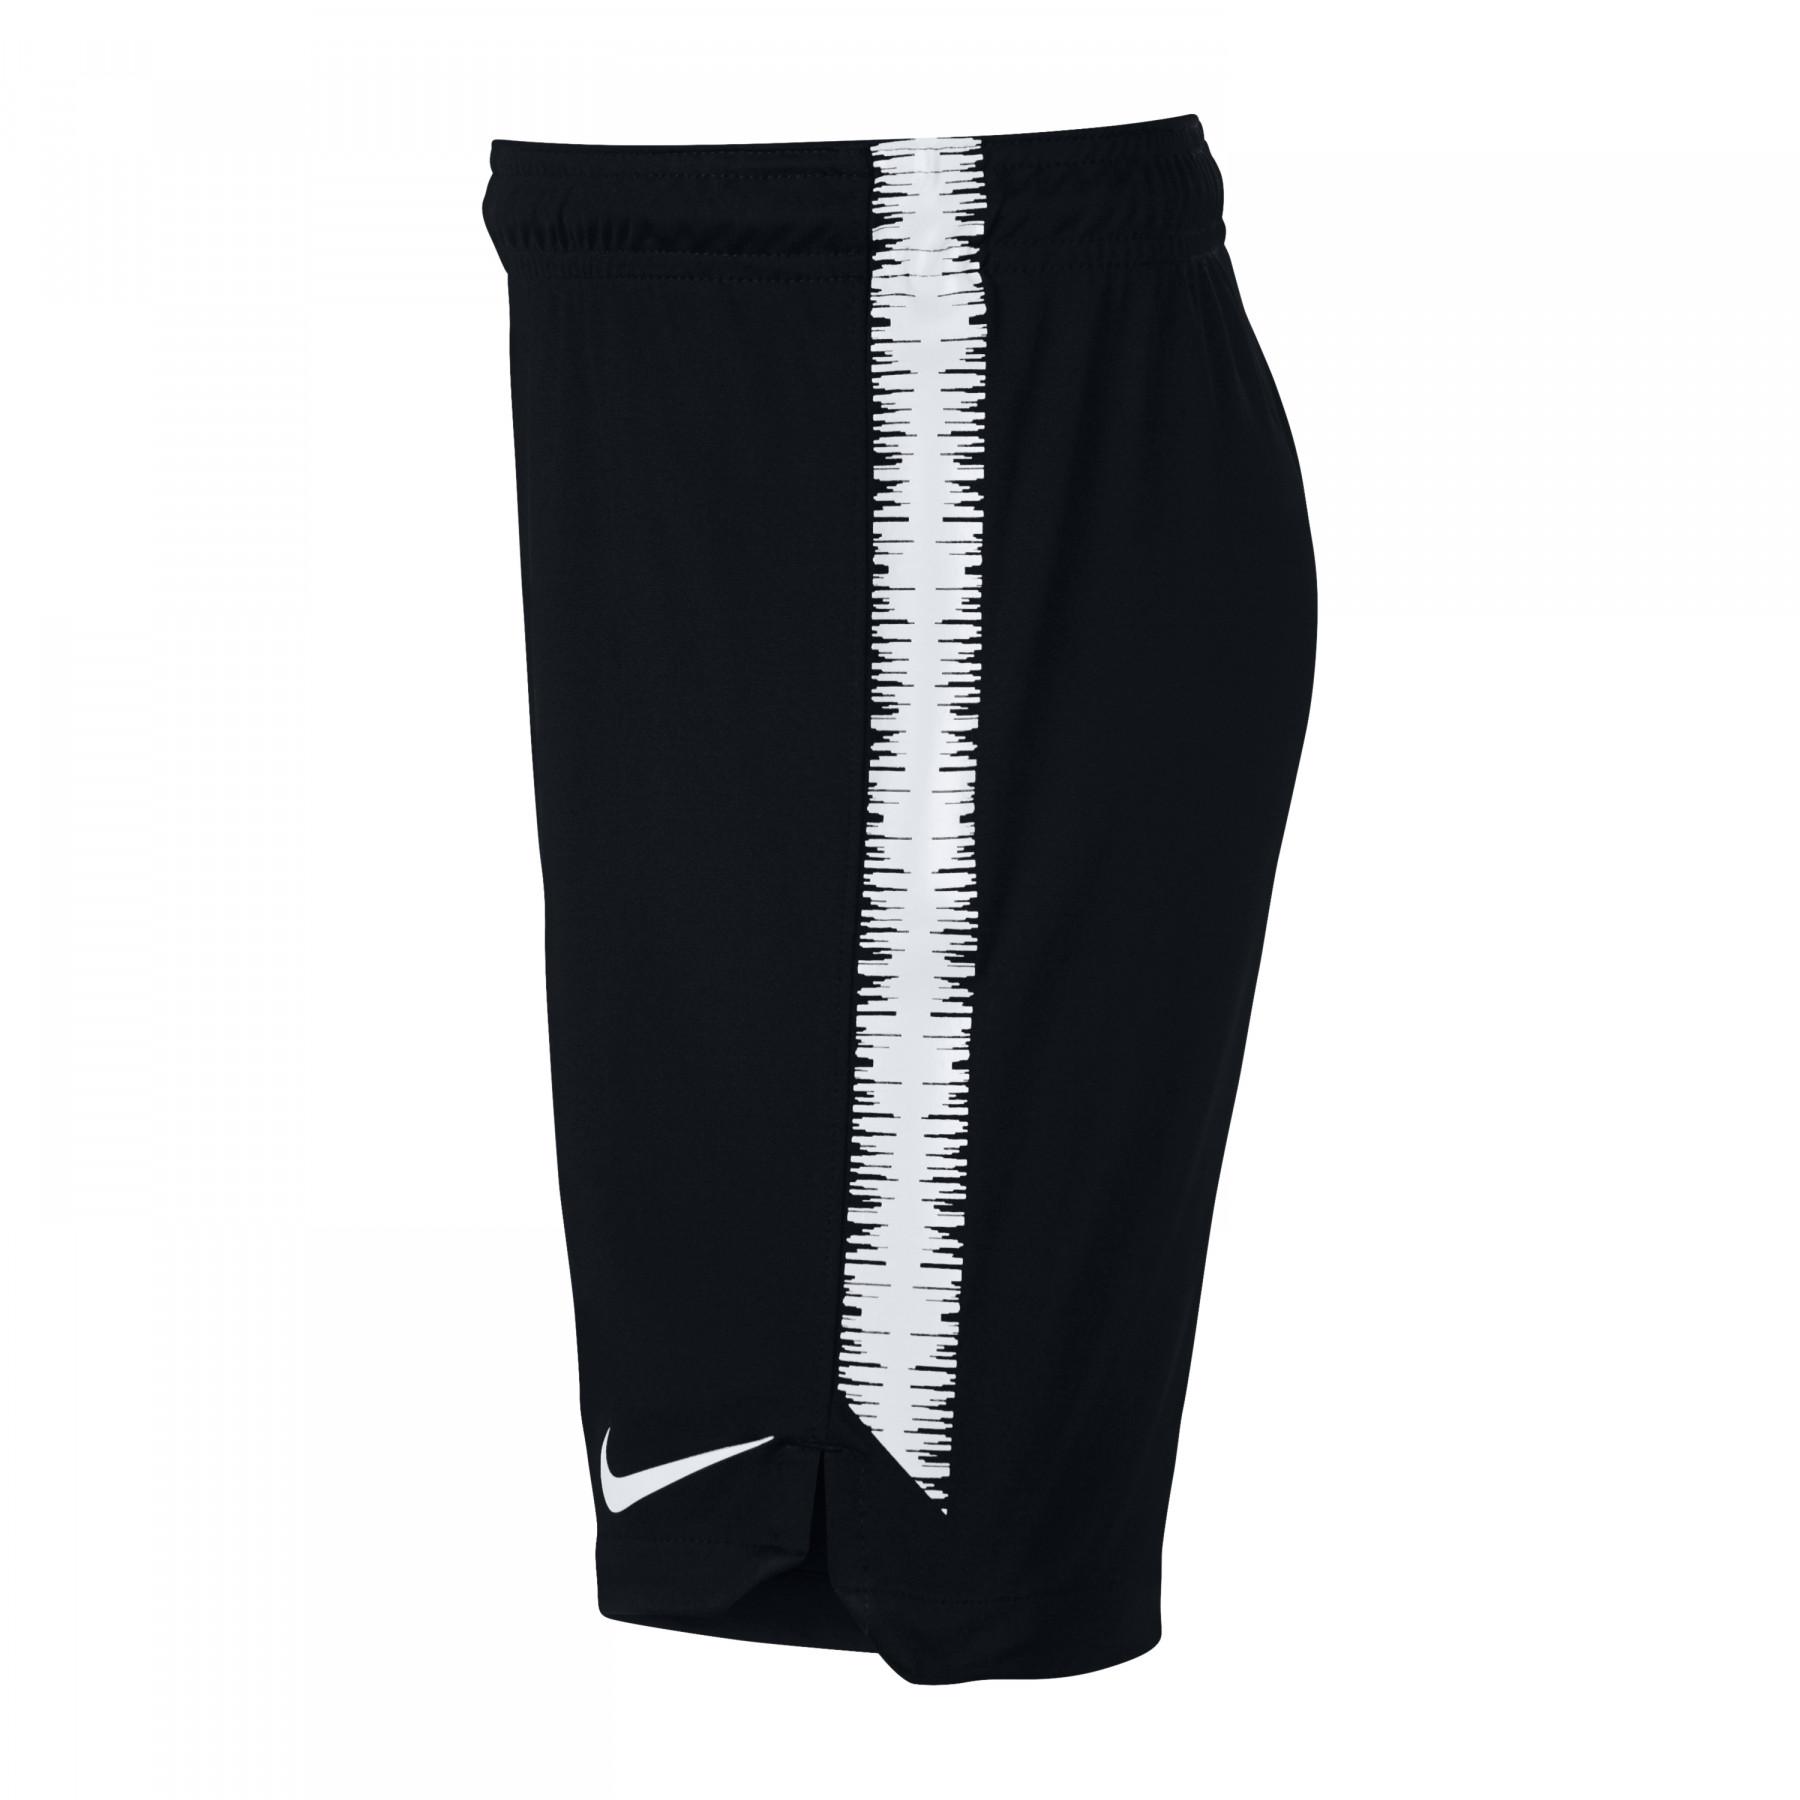 Kinder shorts Nike Dry Squad 18